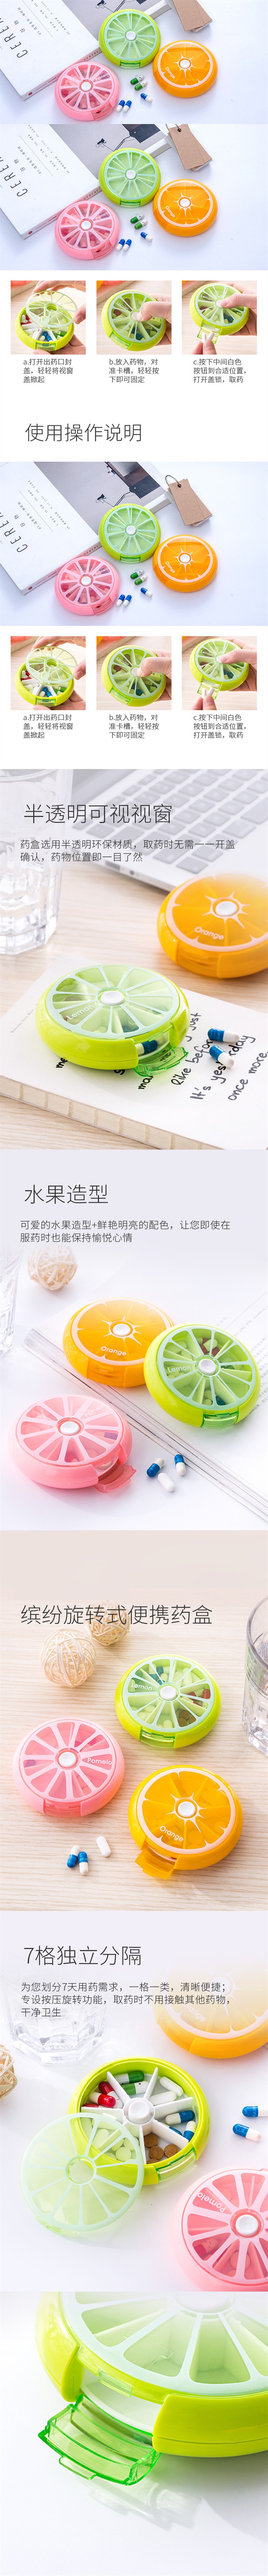 【中国直邮】英尼 创意水果旋转式便携分装药品收纳盒 粉色 1PCS